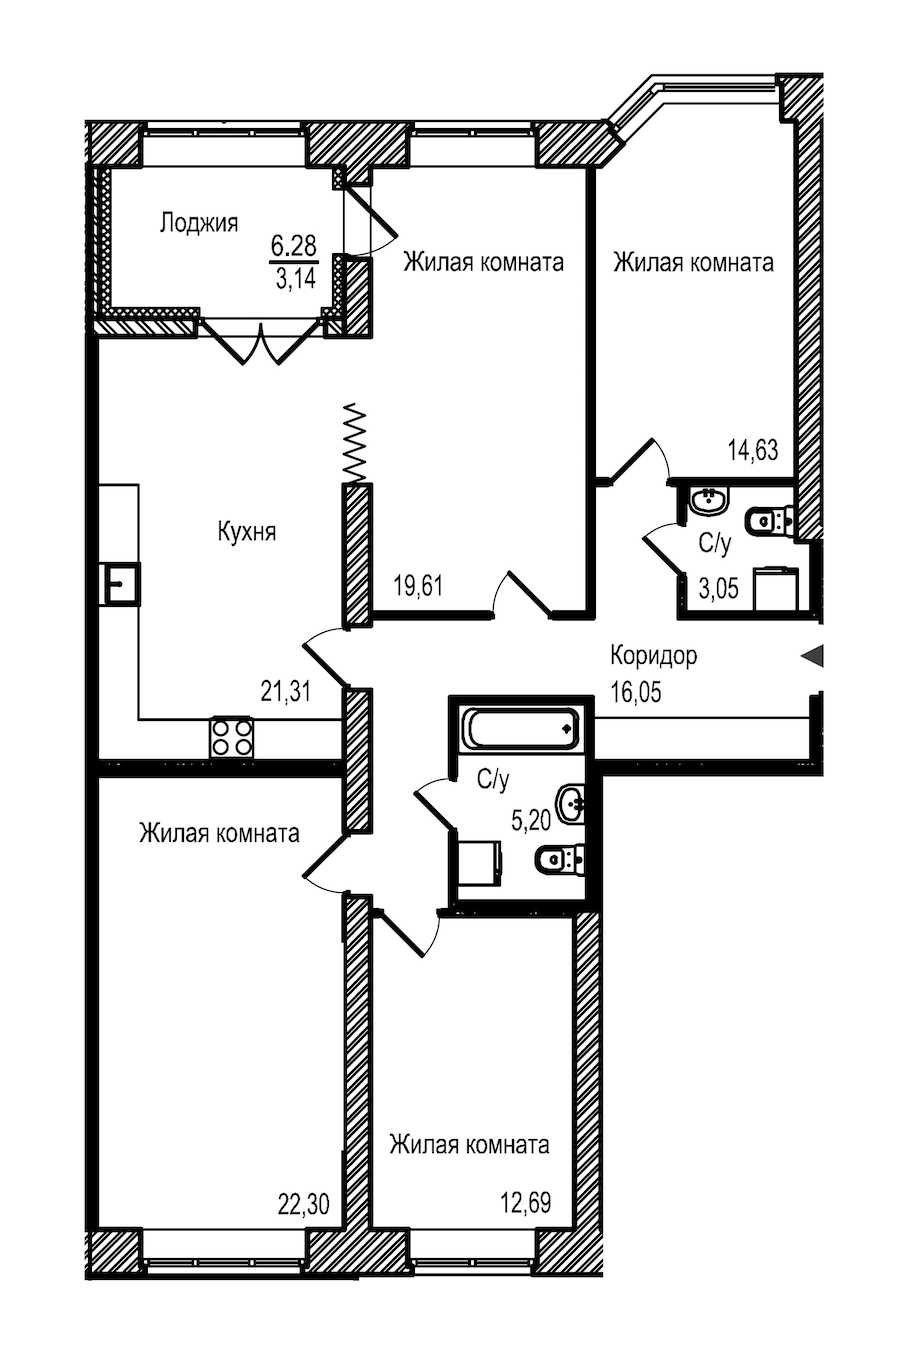 Четырехкомнатная квартира в : площадь 117.98 м2 , этаж: 2 – купить в Санкт-Петербурге